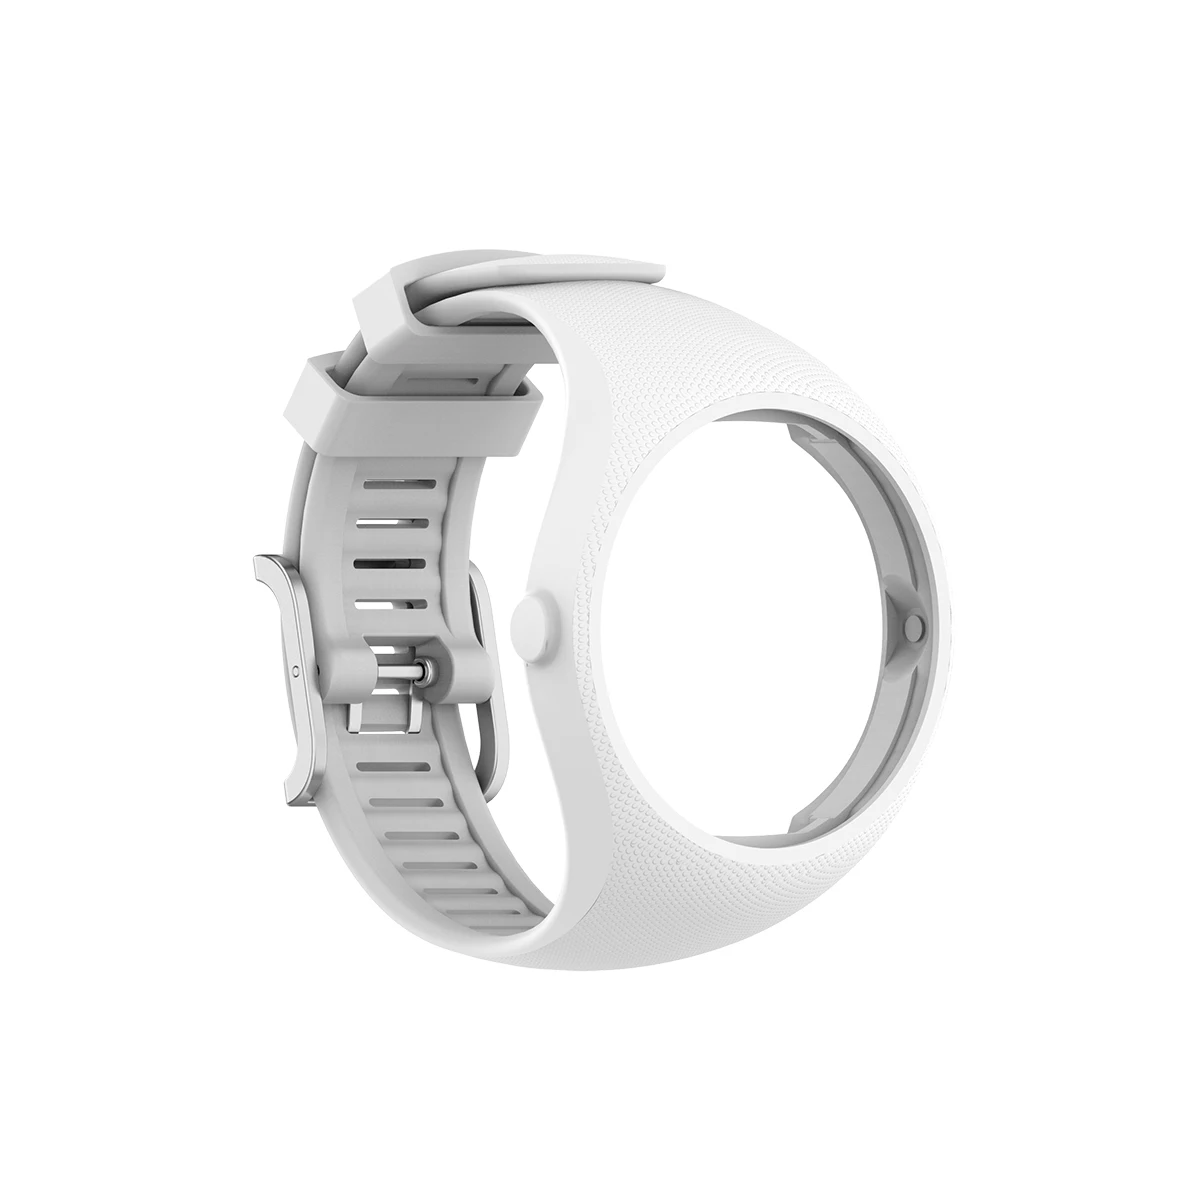 In Morbido Silicone, Braccialetto Polar M200 Smart Watch Sostituzione Cinghie Da Polso Polar M200 Band Smart Correa